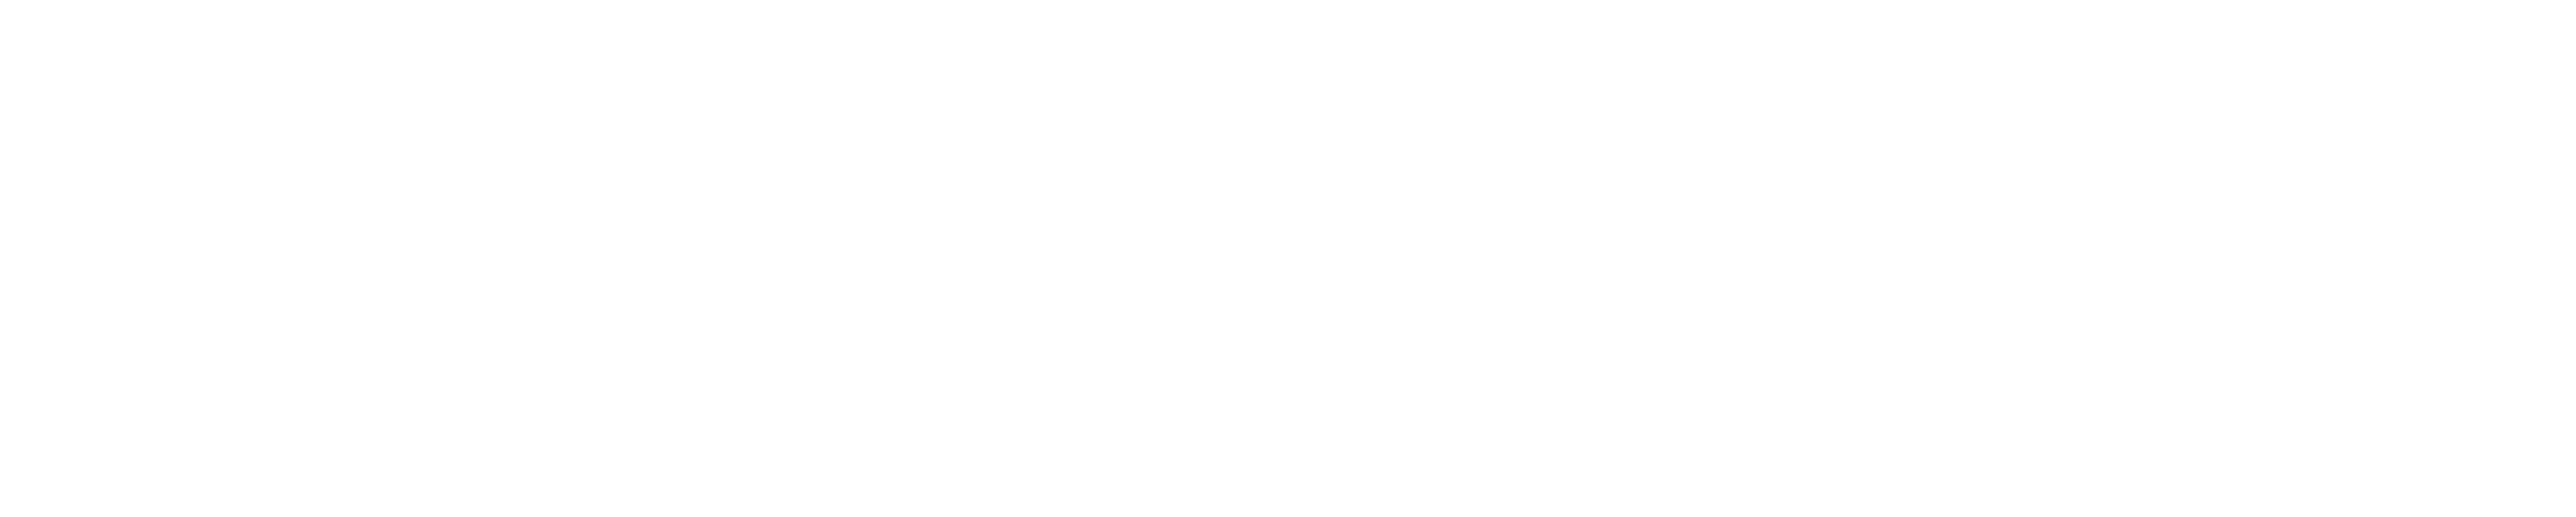 Heart & Soil logo